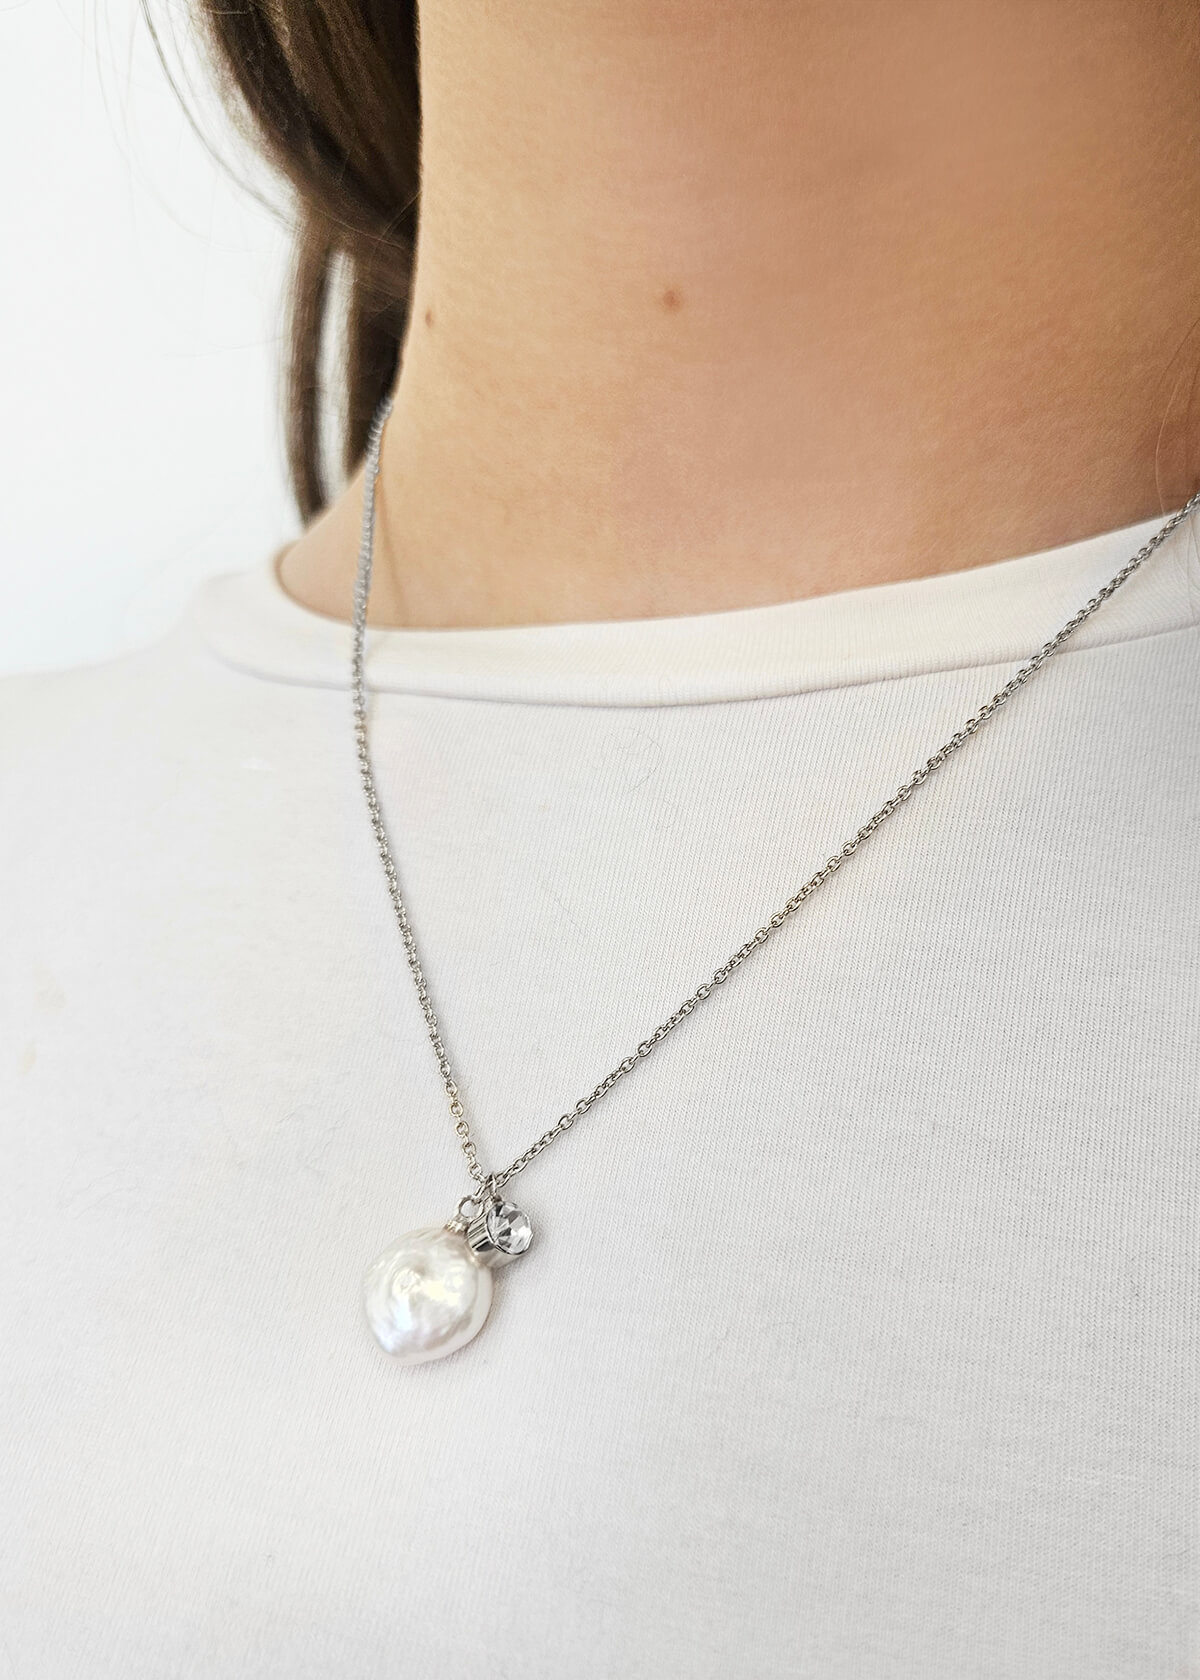 Chaîne avec mini perle et cristal - 1517 - 